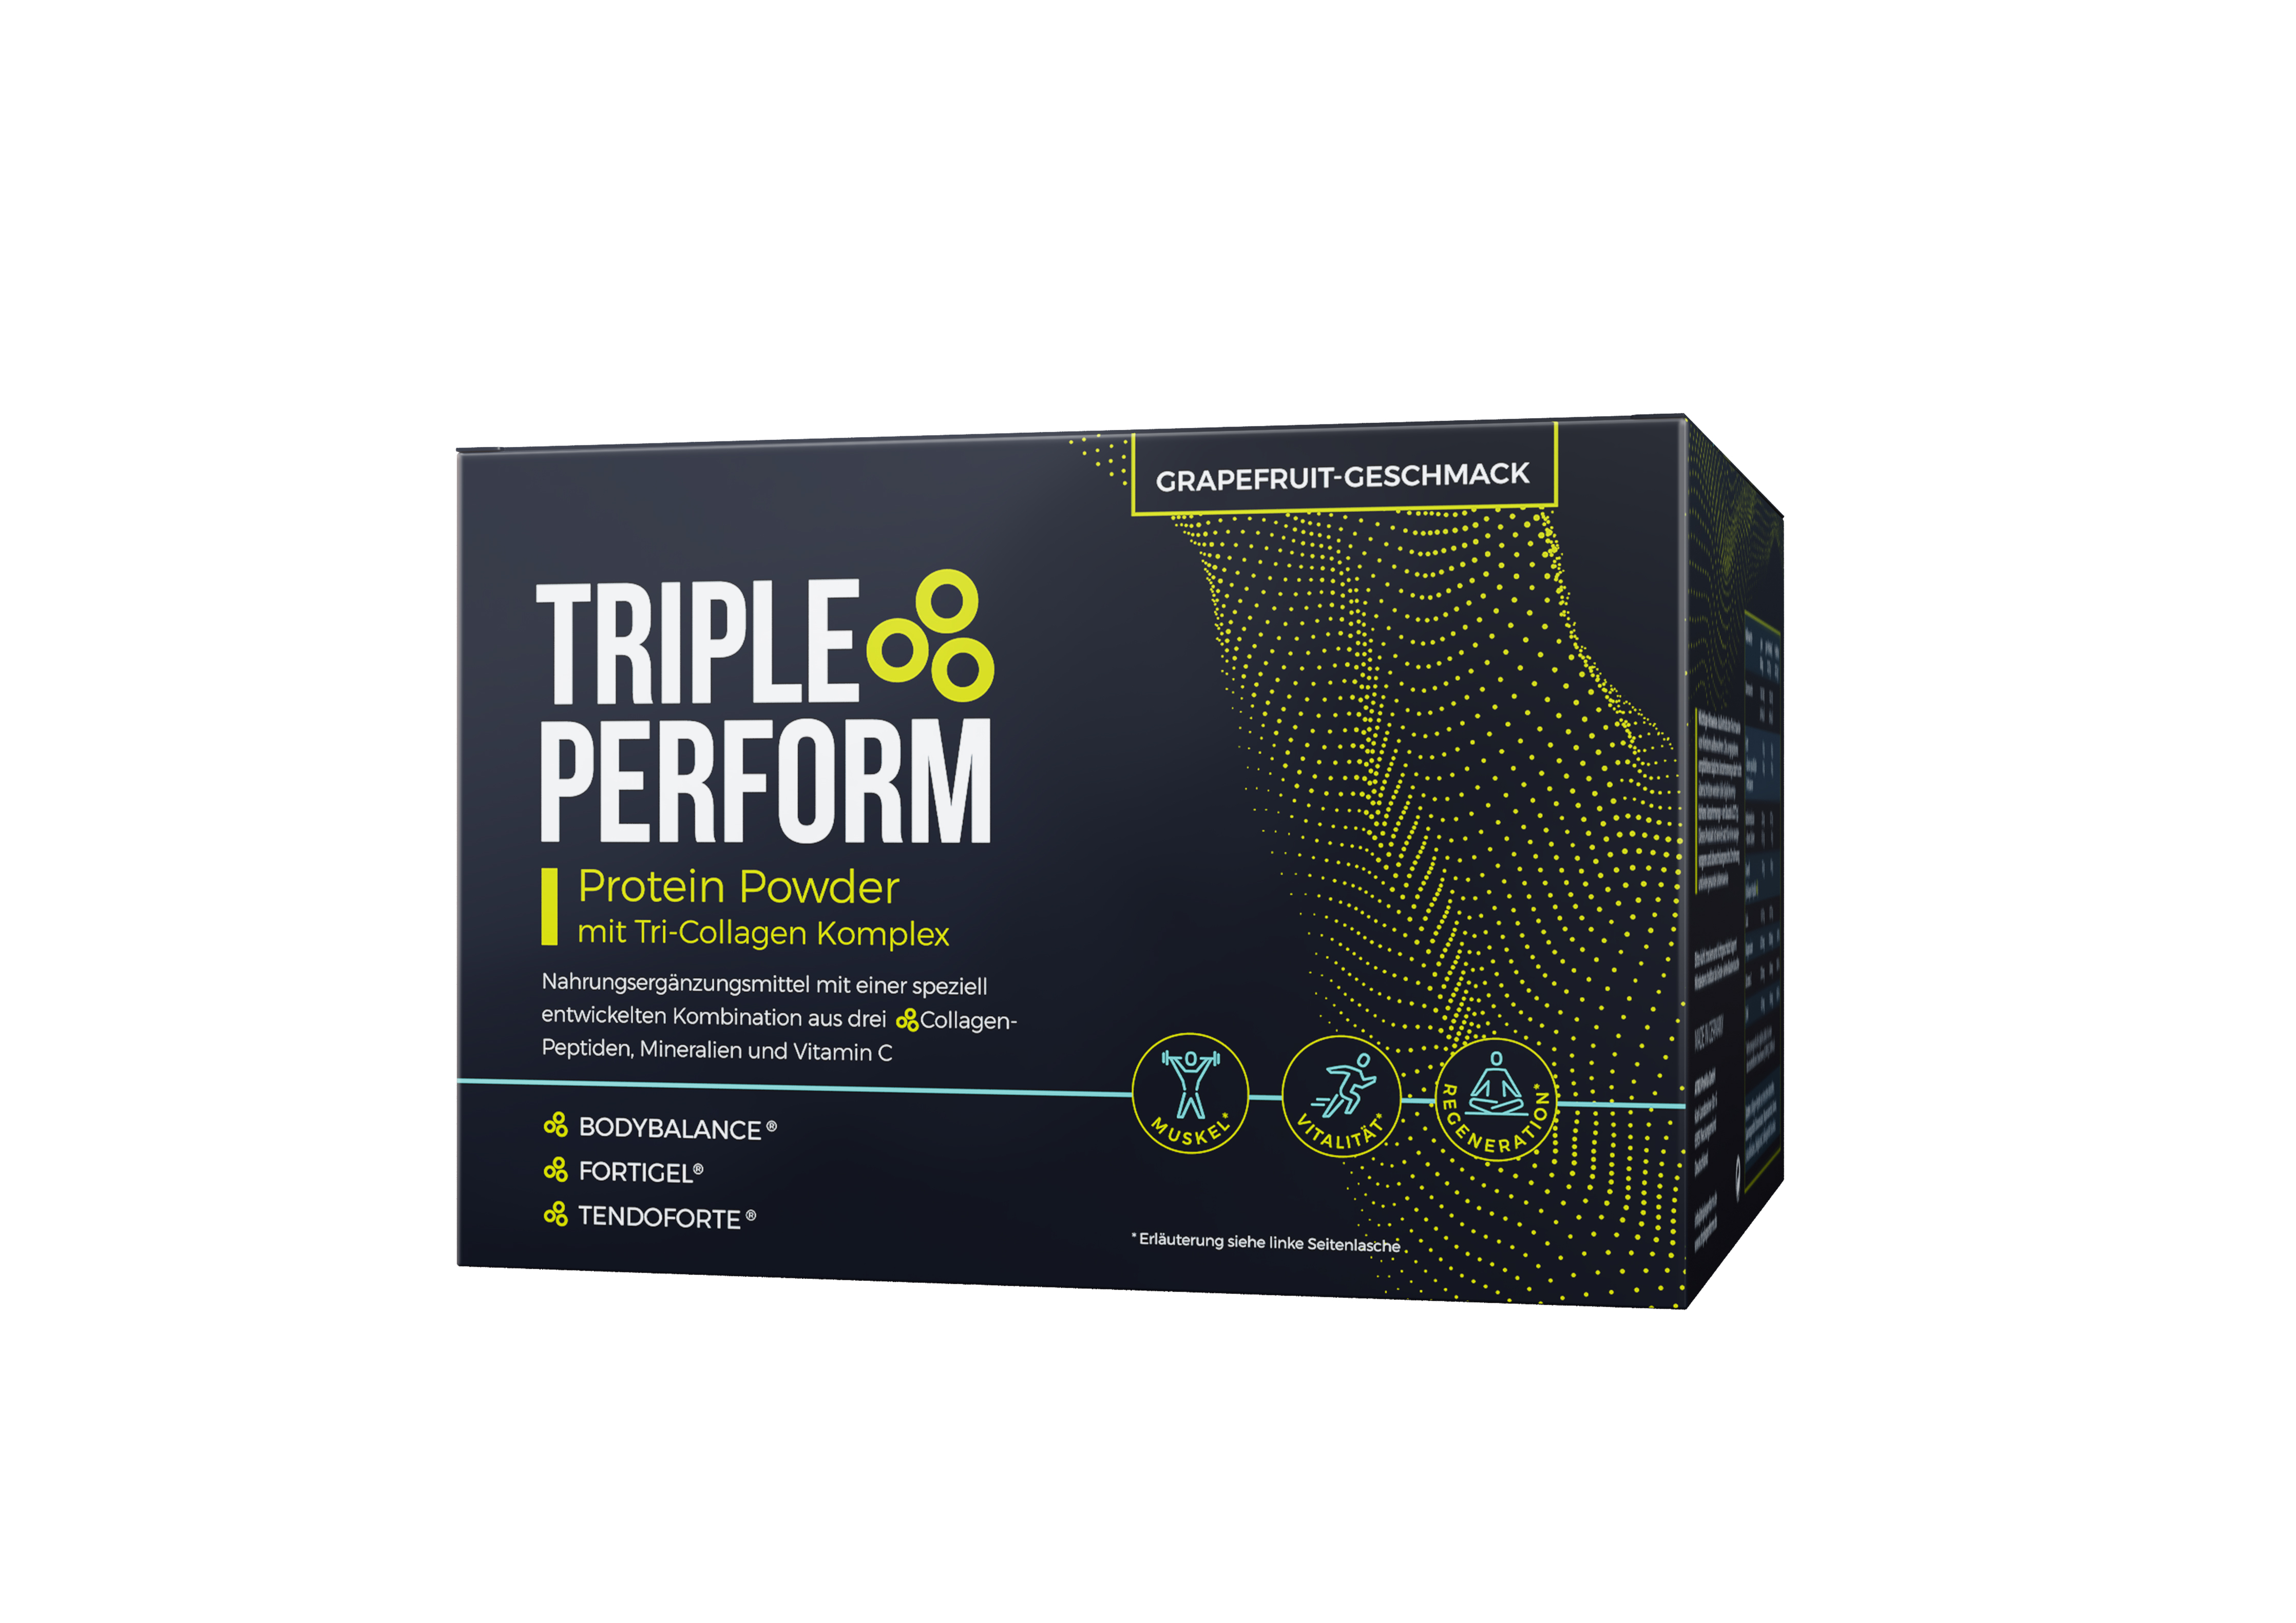 Triple Perform im Test: Erfahrungen, Wirkung und 10 € Rabattcode für Februar